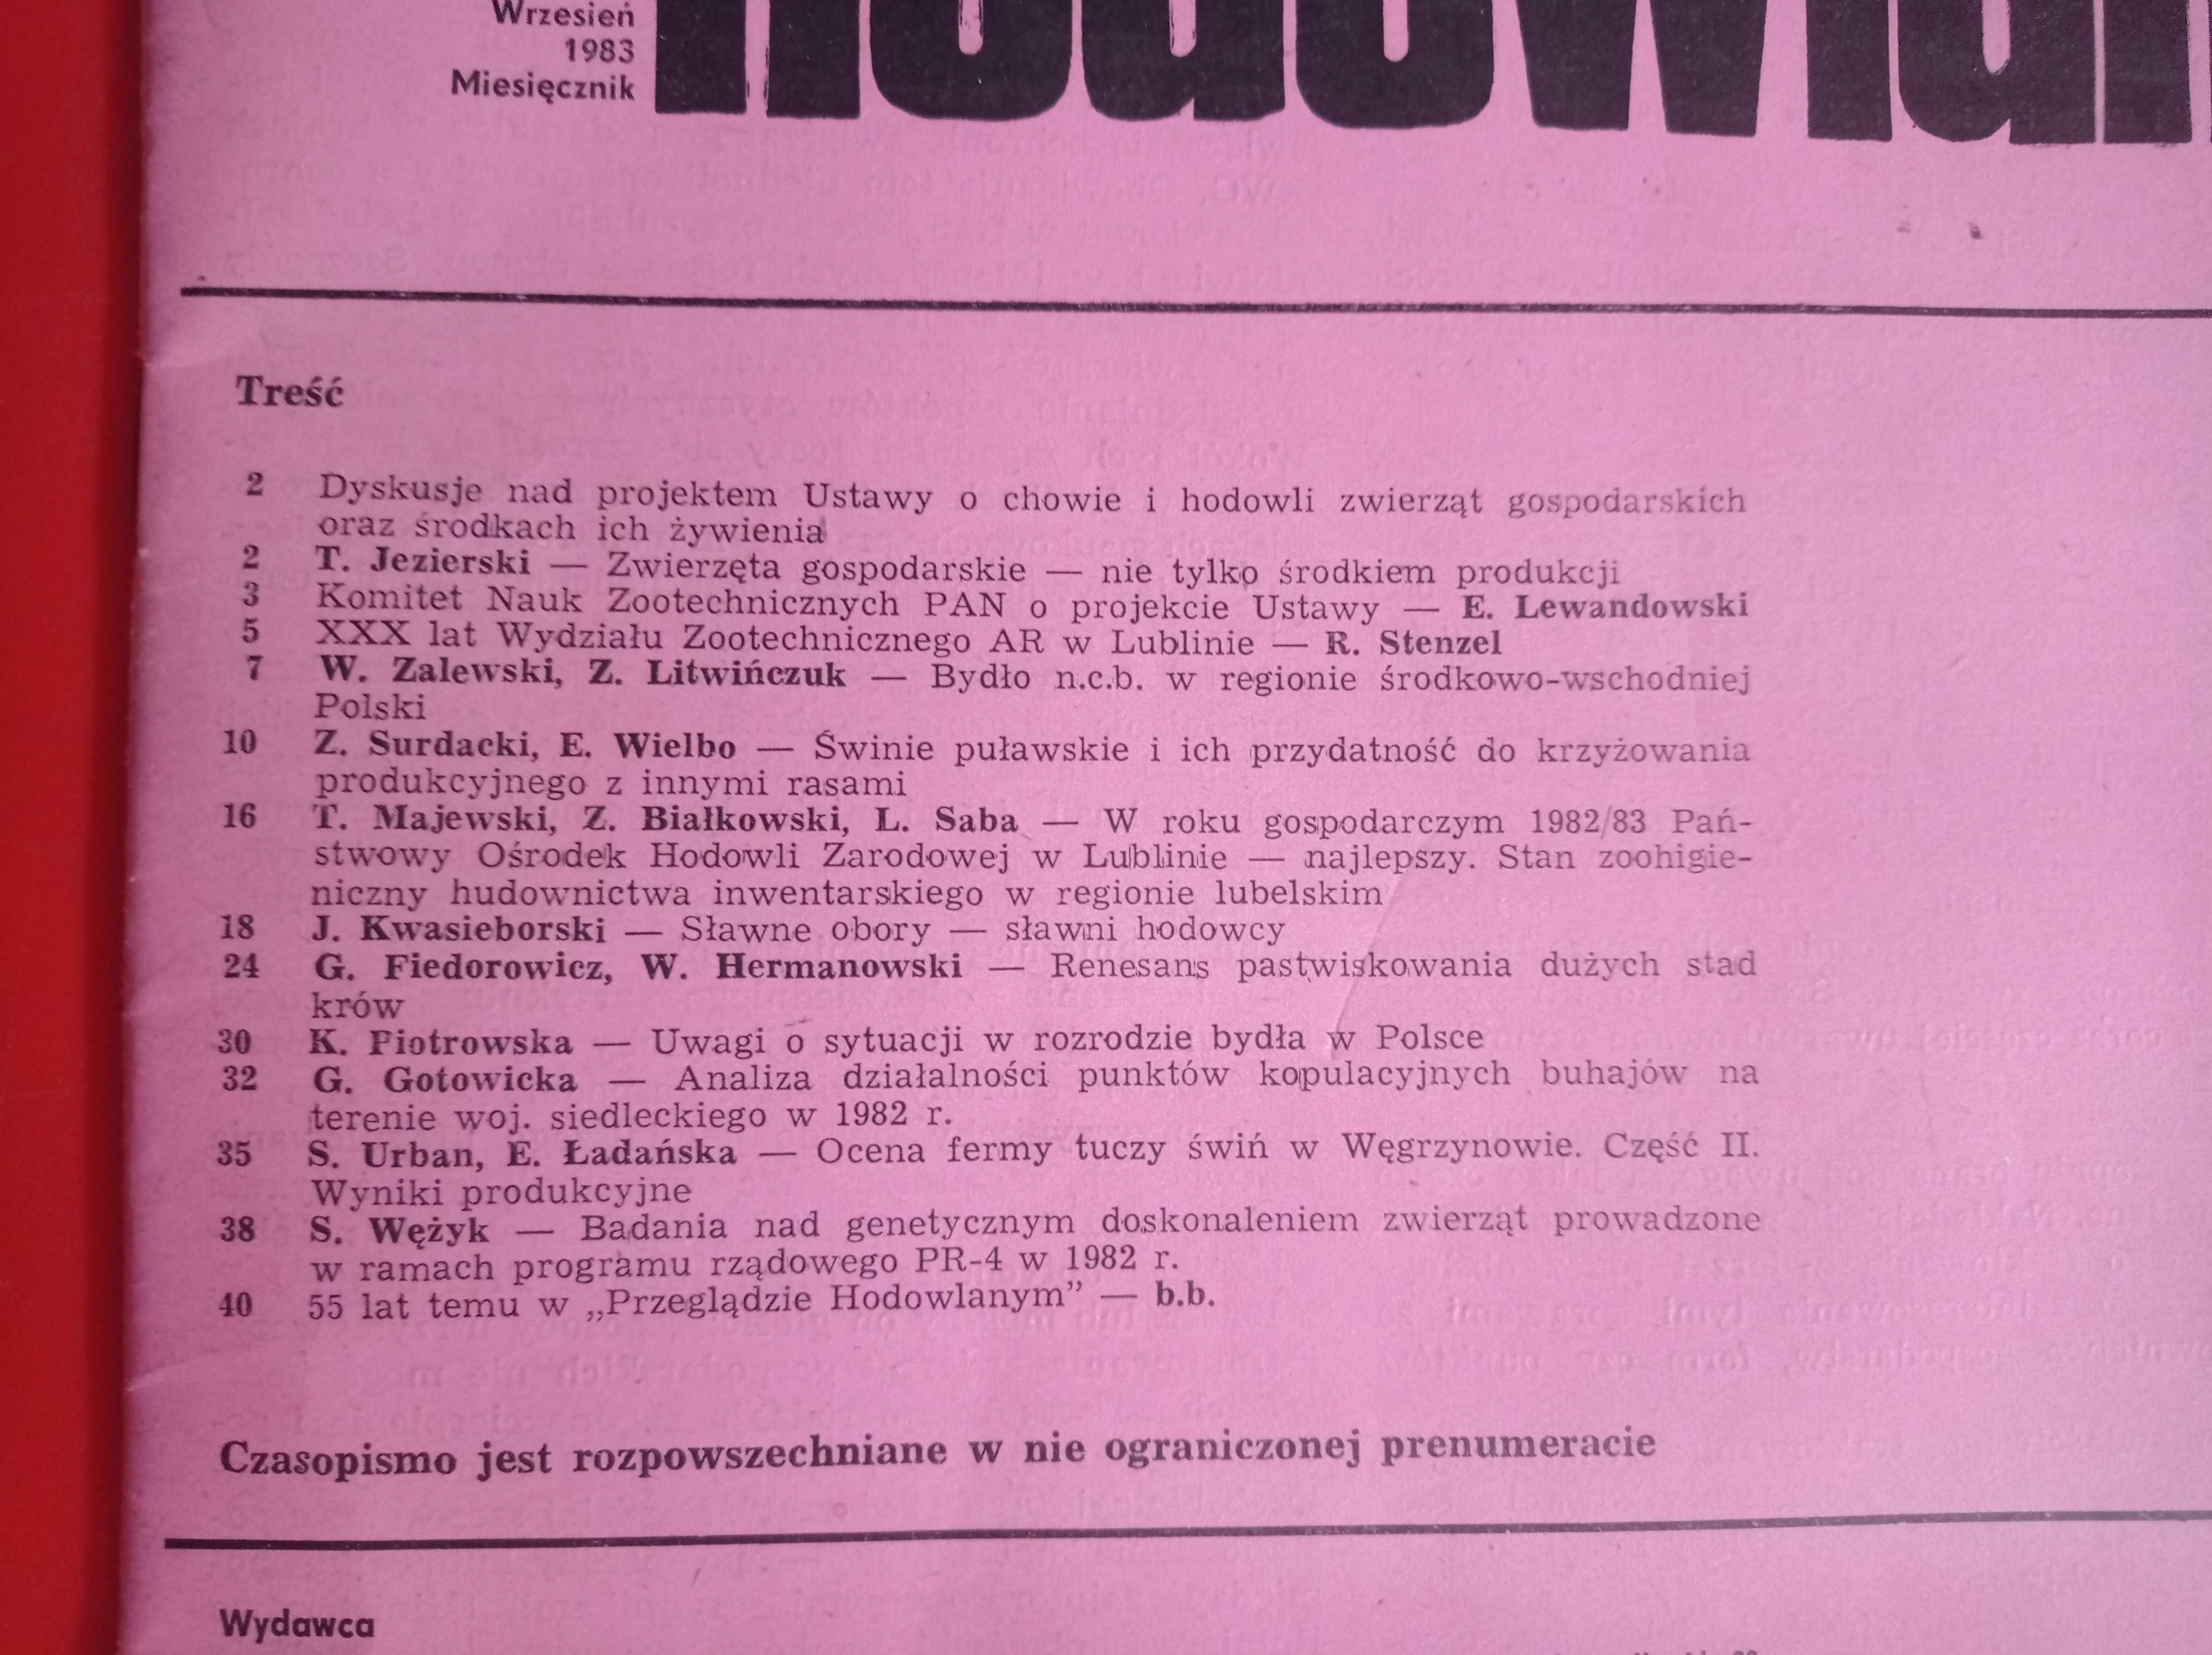 Przegląd hodowlany, wrzesień 1983, miesięcznik